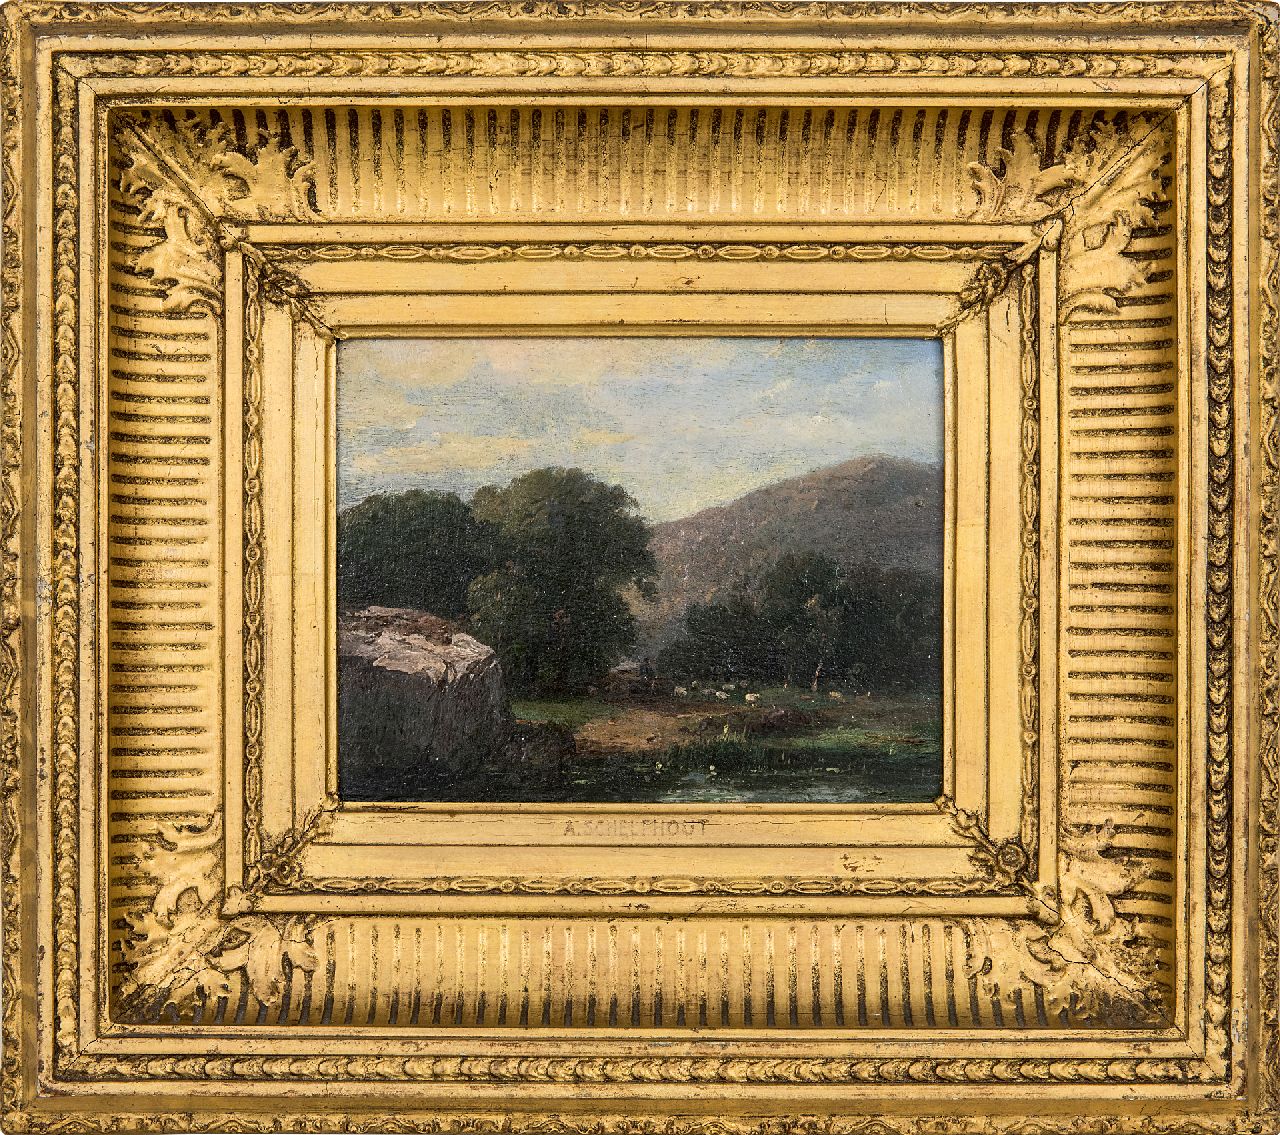 Schelfhout A.  | Andreas Schelfhout | Schilderijen te koop aangeboden | Heuvellandschap met schaapskudde en herder, olieverf op paneel 13,8 x 17,5 cm, gesigneerd linksonder met initialen